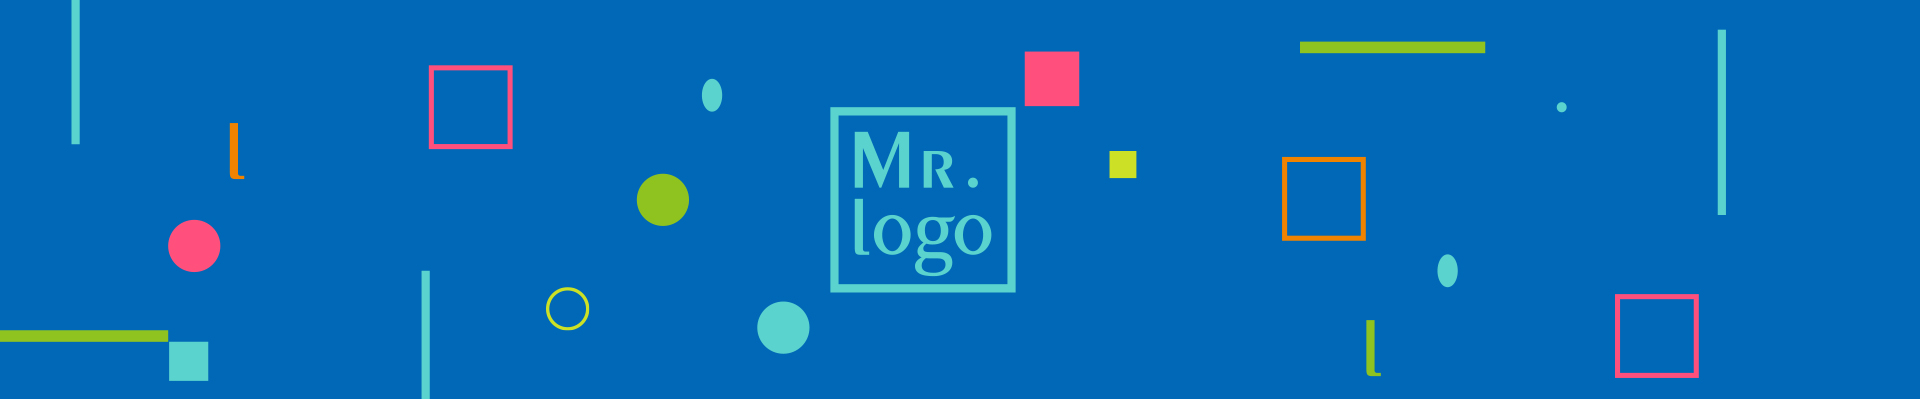 广州logo设计公司简介-商标/标志设计公司概况